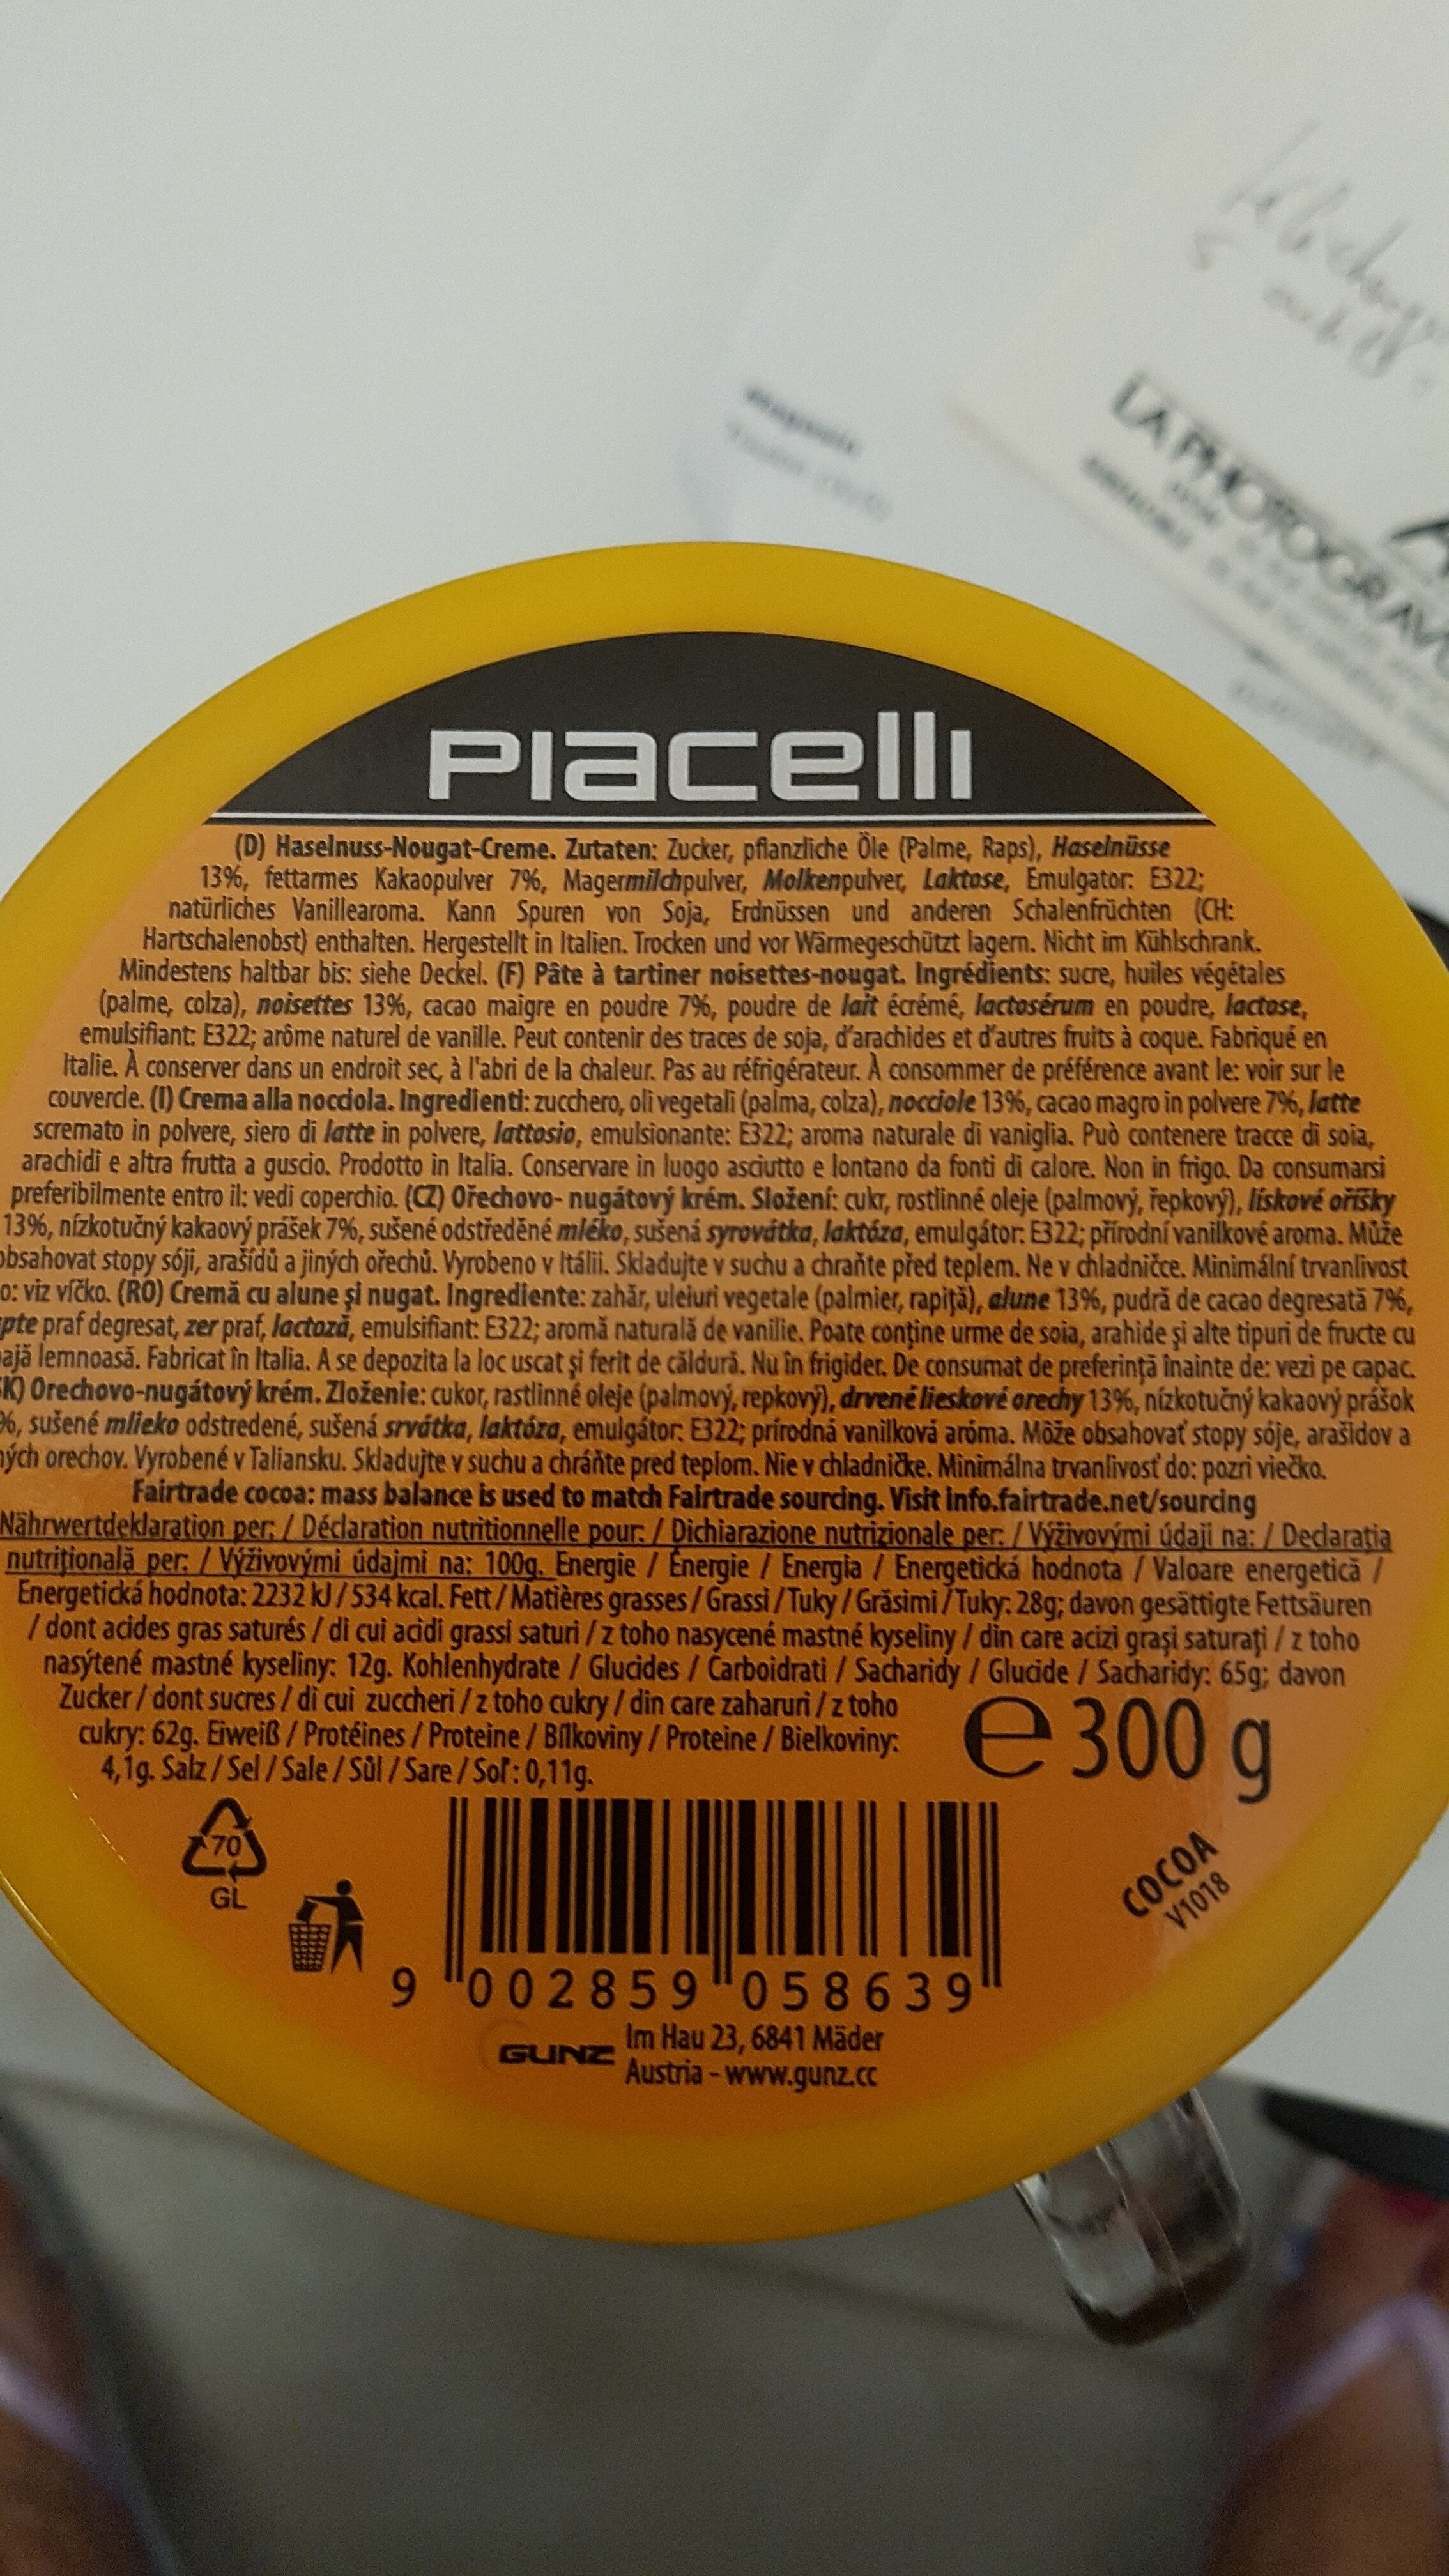 Haselnuss-nougat-creme 300g Tasse Piacelli - Ingrediënten - fr